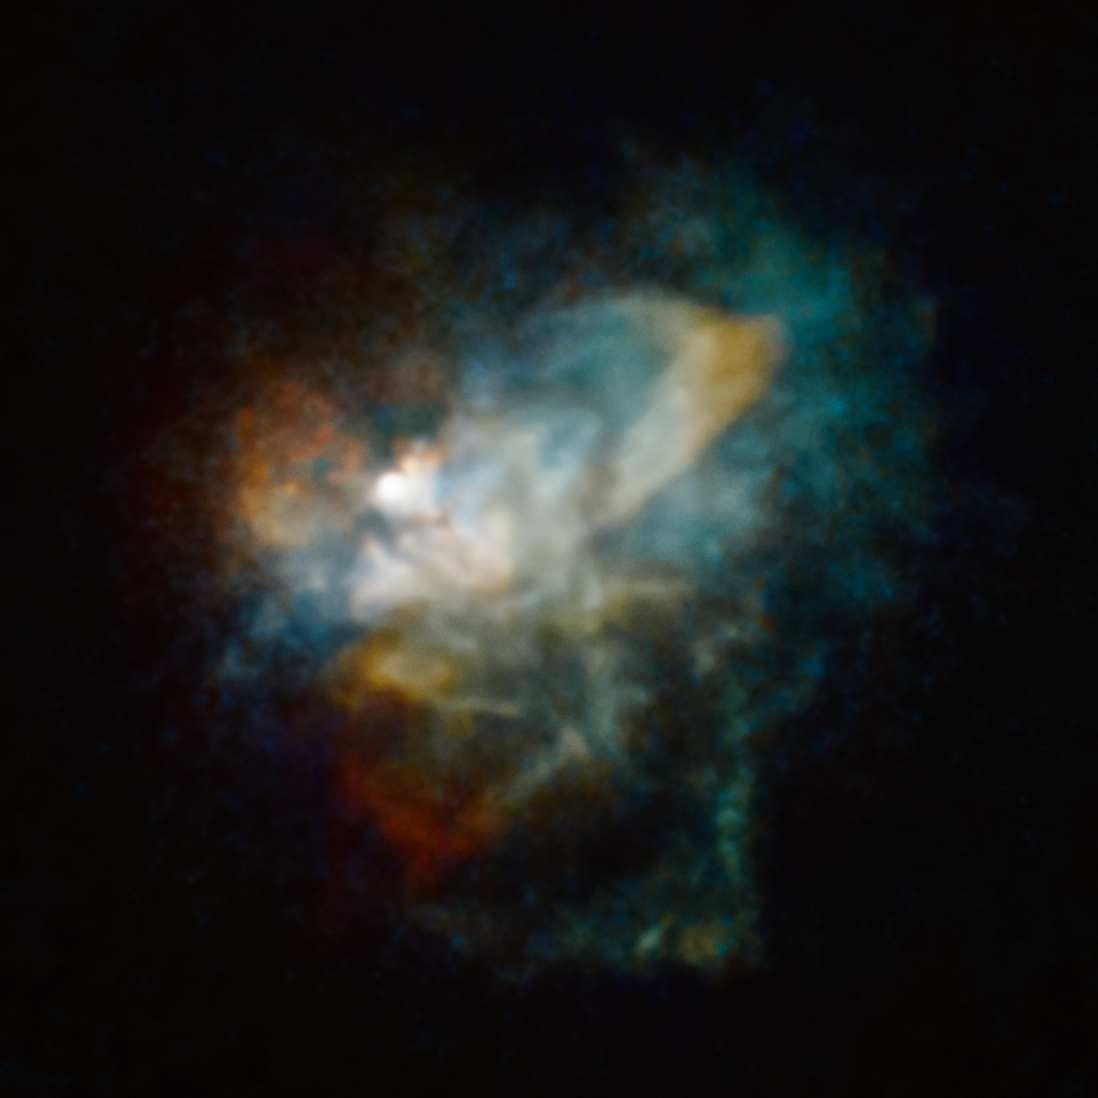 Obraz z Teleskopu Hubble'a przedstawia ogromną mgławicę składająca się z materii wyrzuconej z hiperolbrzyma VY Canis Majoris. Ta mgławica zajmuje na niebie nieregularny kształt o przekroju około 10" - co odpowiada liniowym rozmiarom 12000 j.a. (0.19 l.św.). Źródło: NASA, ESA, and R. Humphreys (University of Minnesota)